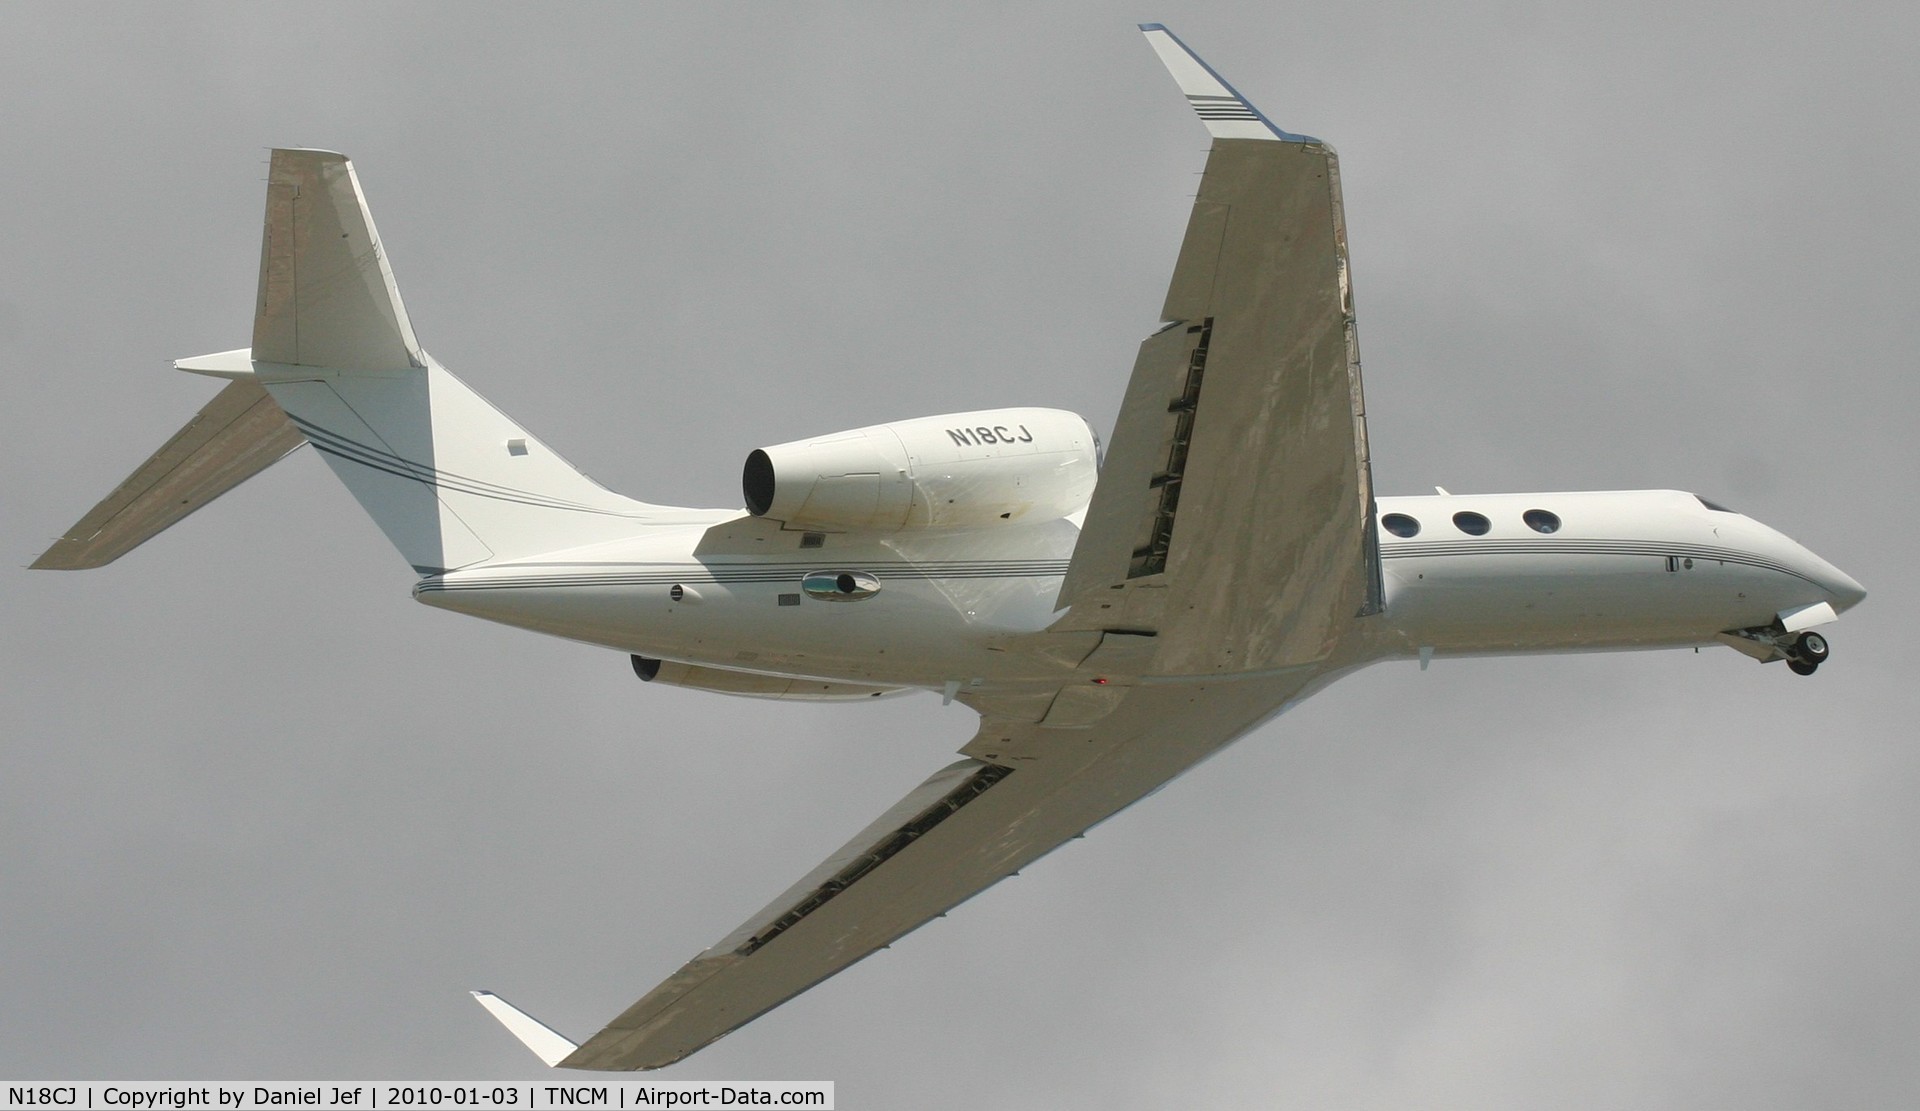 N18CJ, 2008 Gulfstream Aerospace GIV-X (G450) C/N 4141, N18CJ departing TNCM